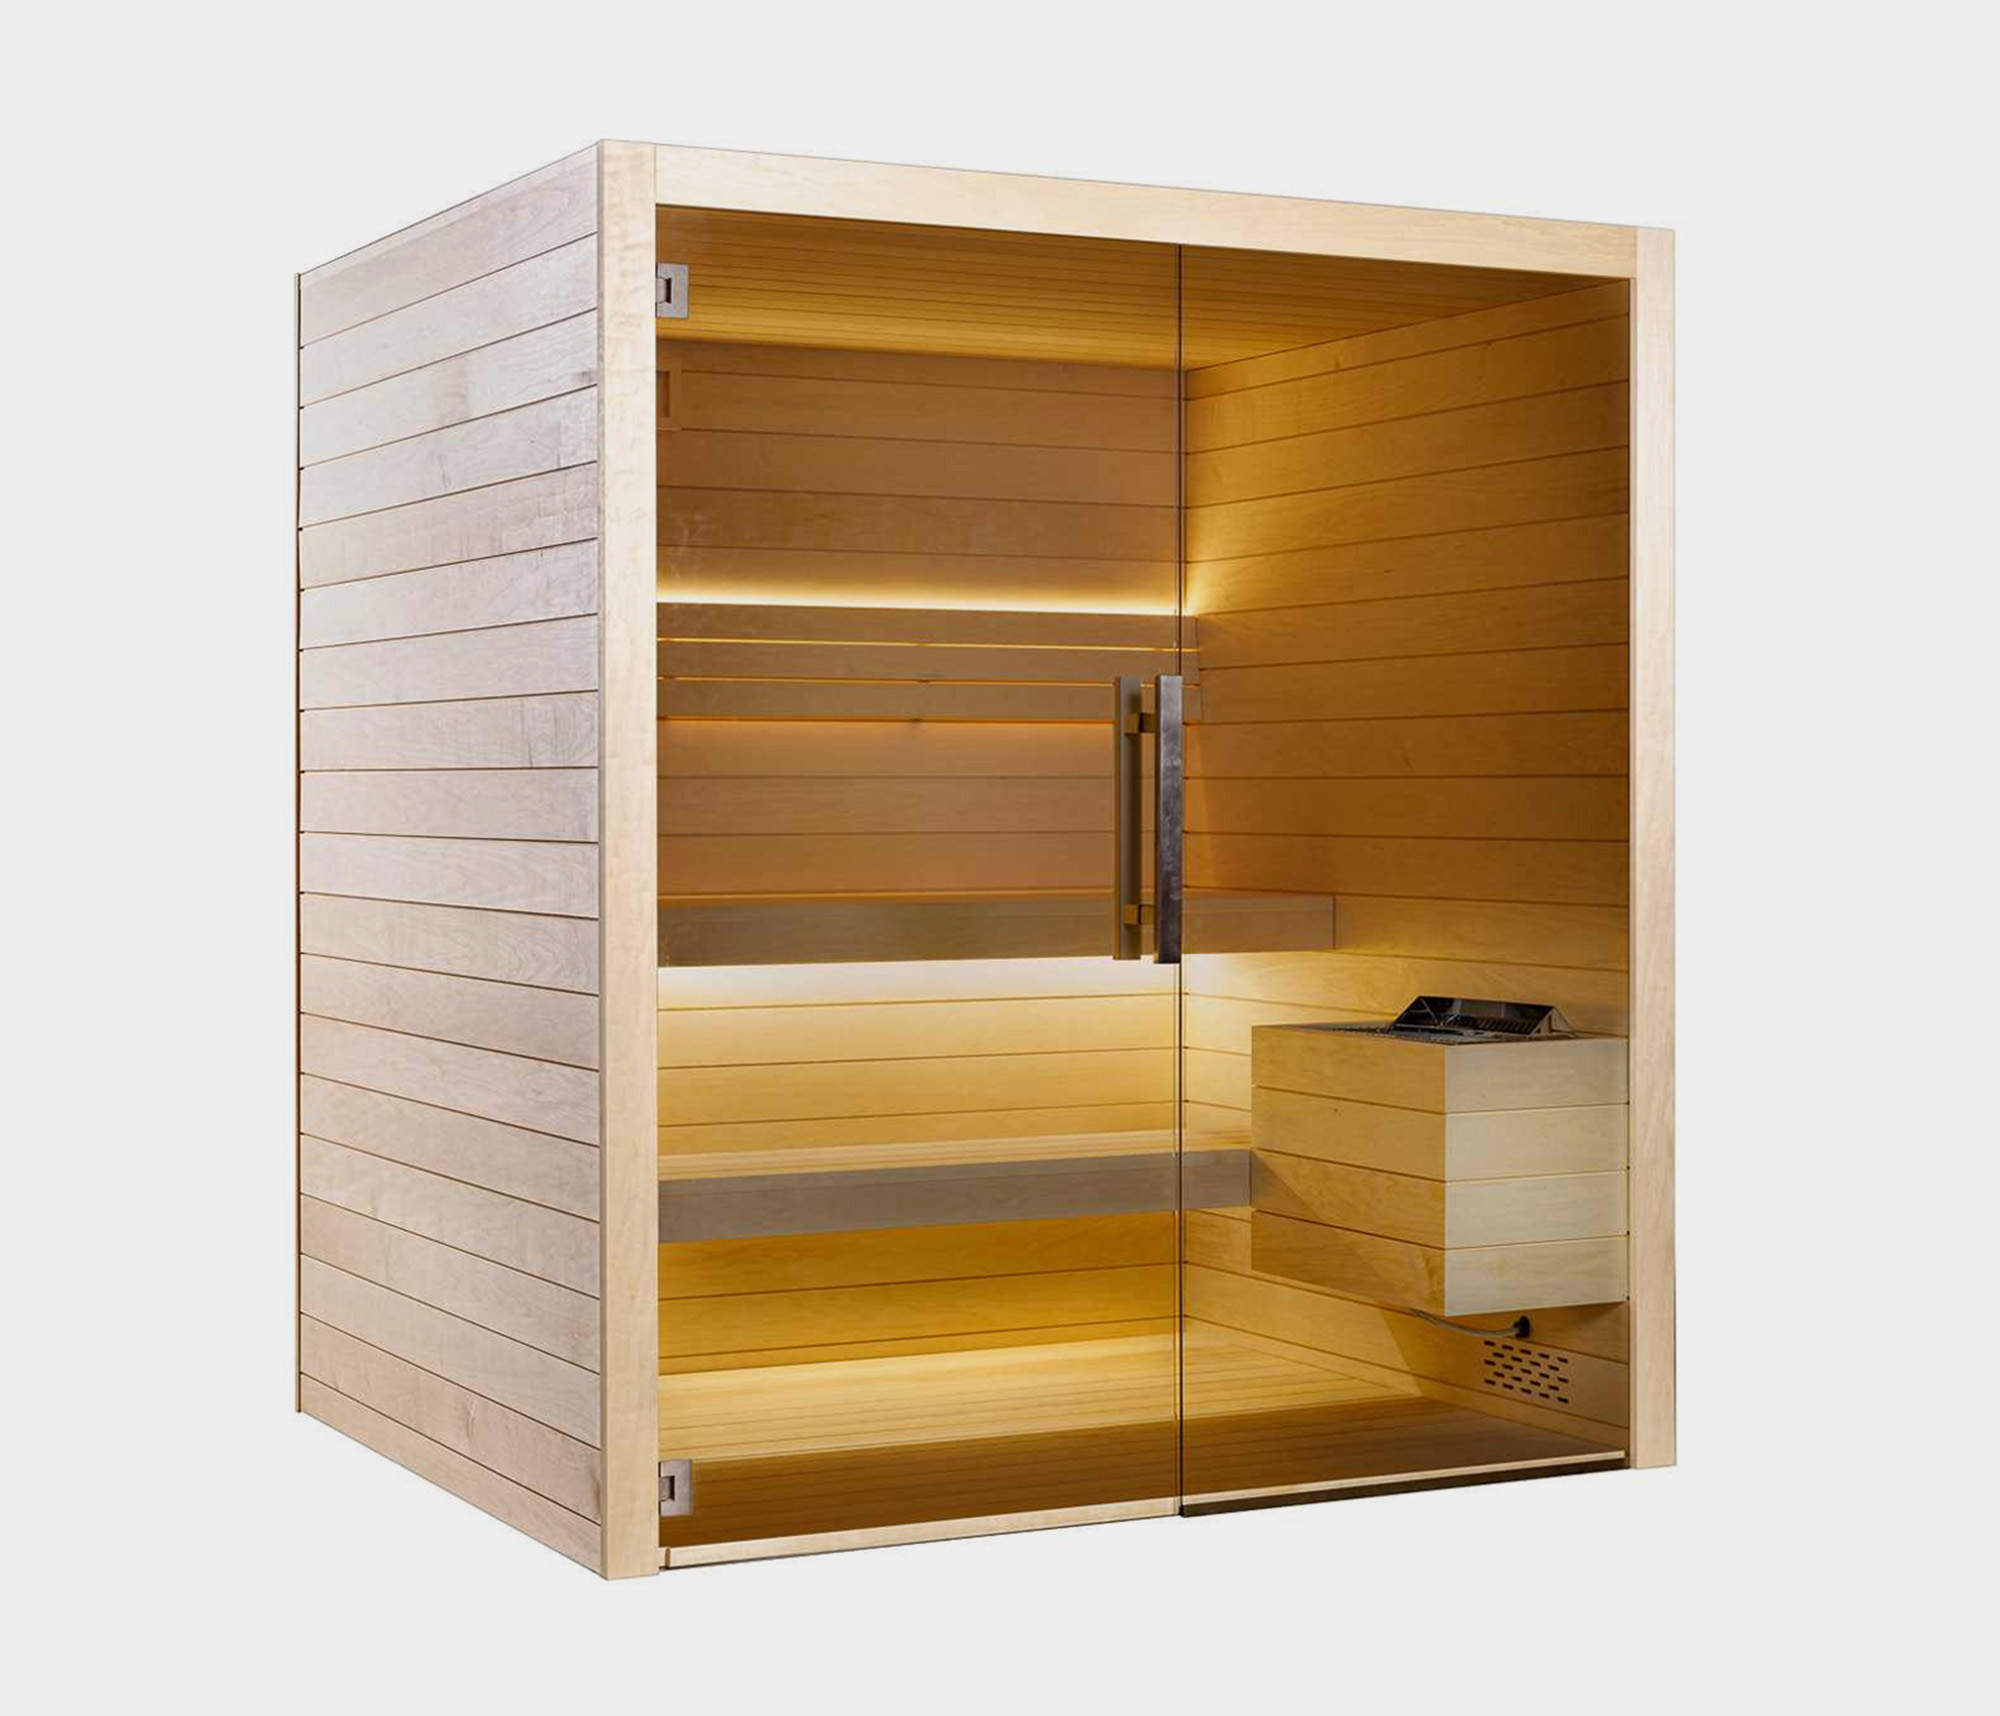 Sauna Ace 200 från Hanscraft. Modern inomhusbastu med plats för 4-6 personer. Stort urval av bastutillbehör. Levereras färdigmonterad eller som bastubyggsats.